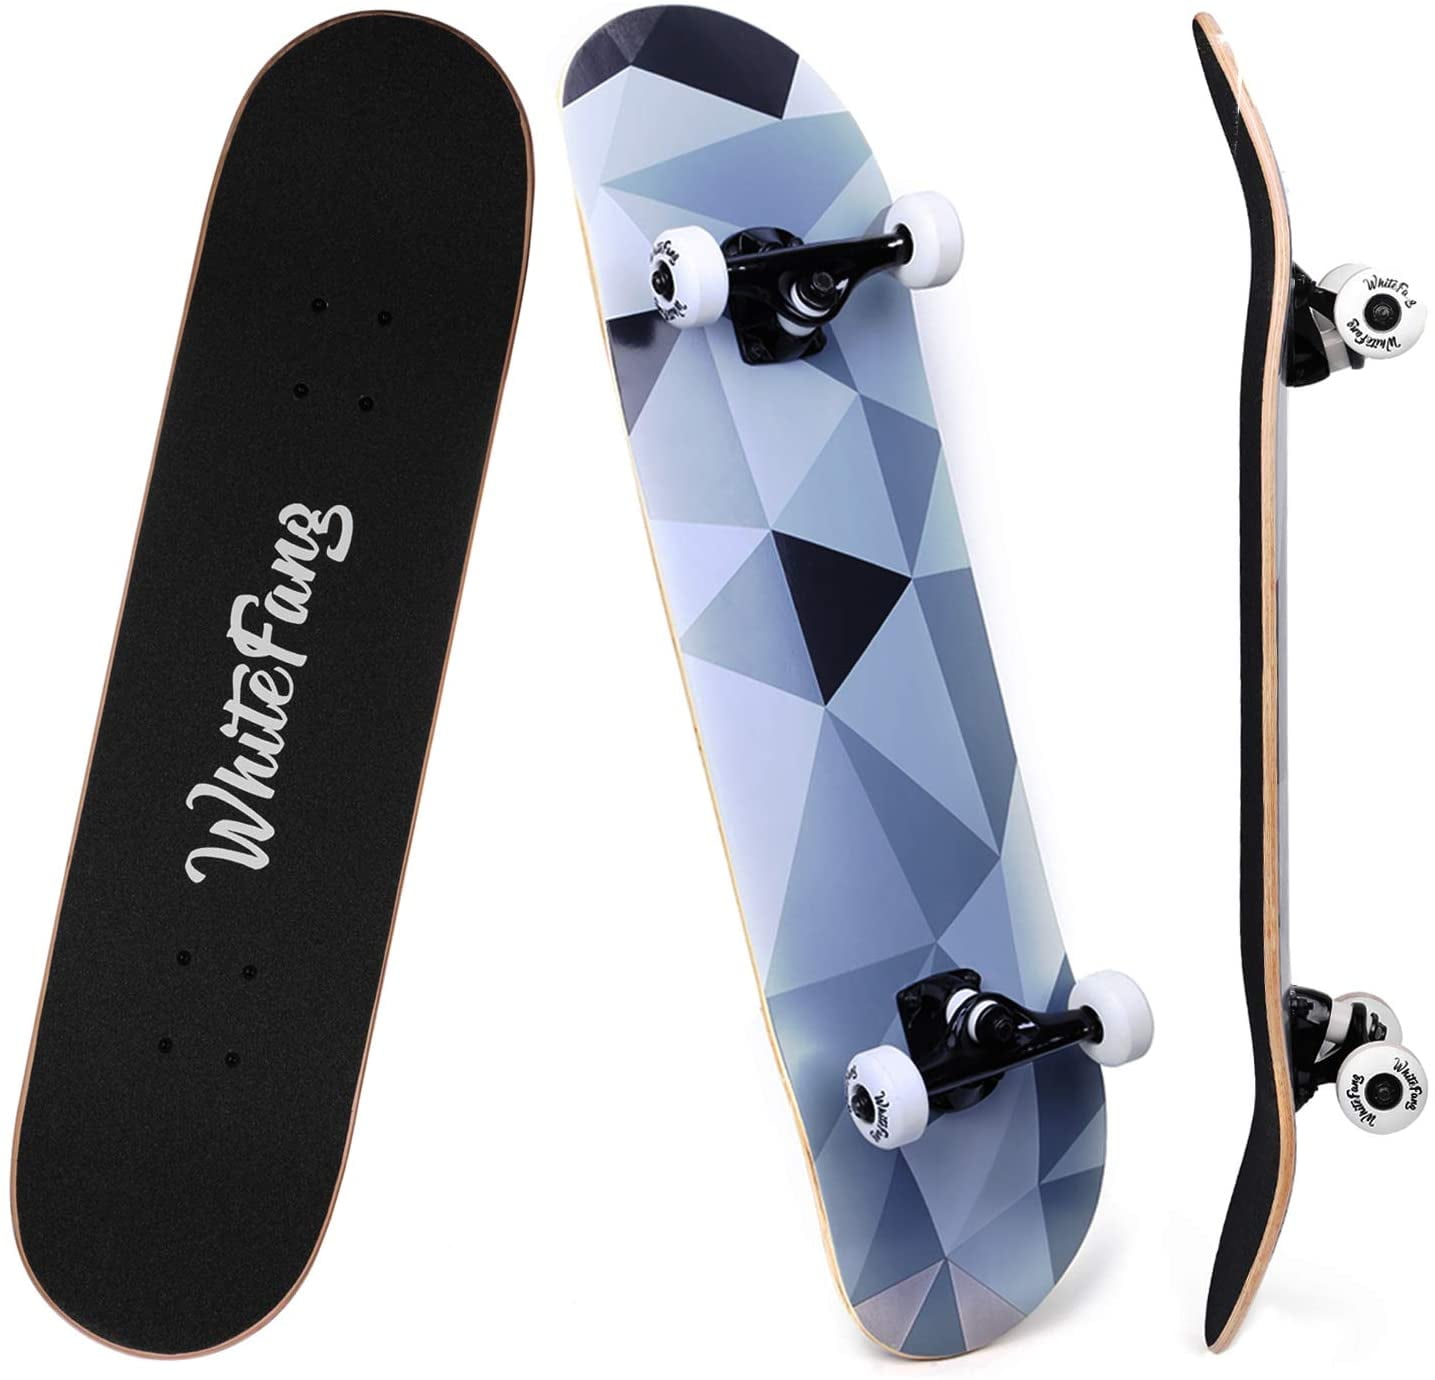 Complete Skateboard 31"x 8" Longboard Double Kick Maple Adult Beginner Teen Gift 